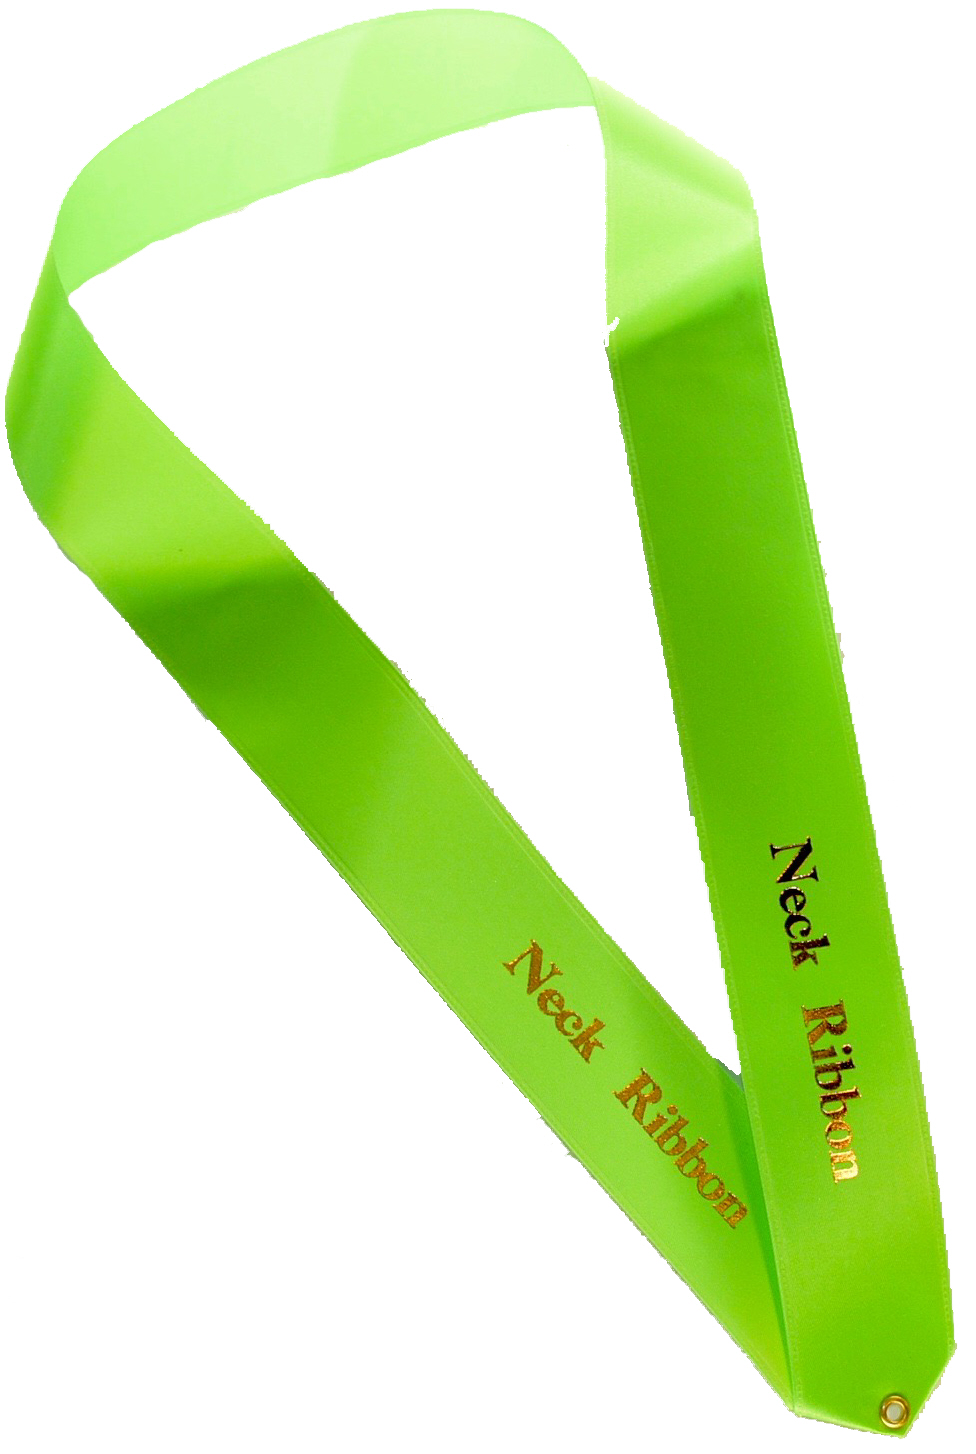 Neck Ribbon - Printed 1 Side or 2 Sides Same